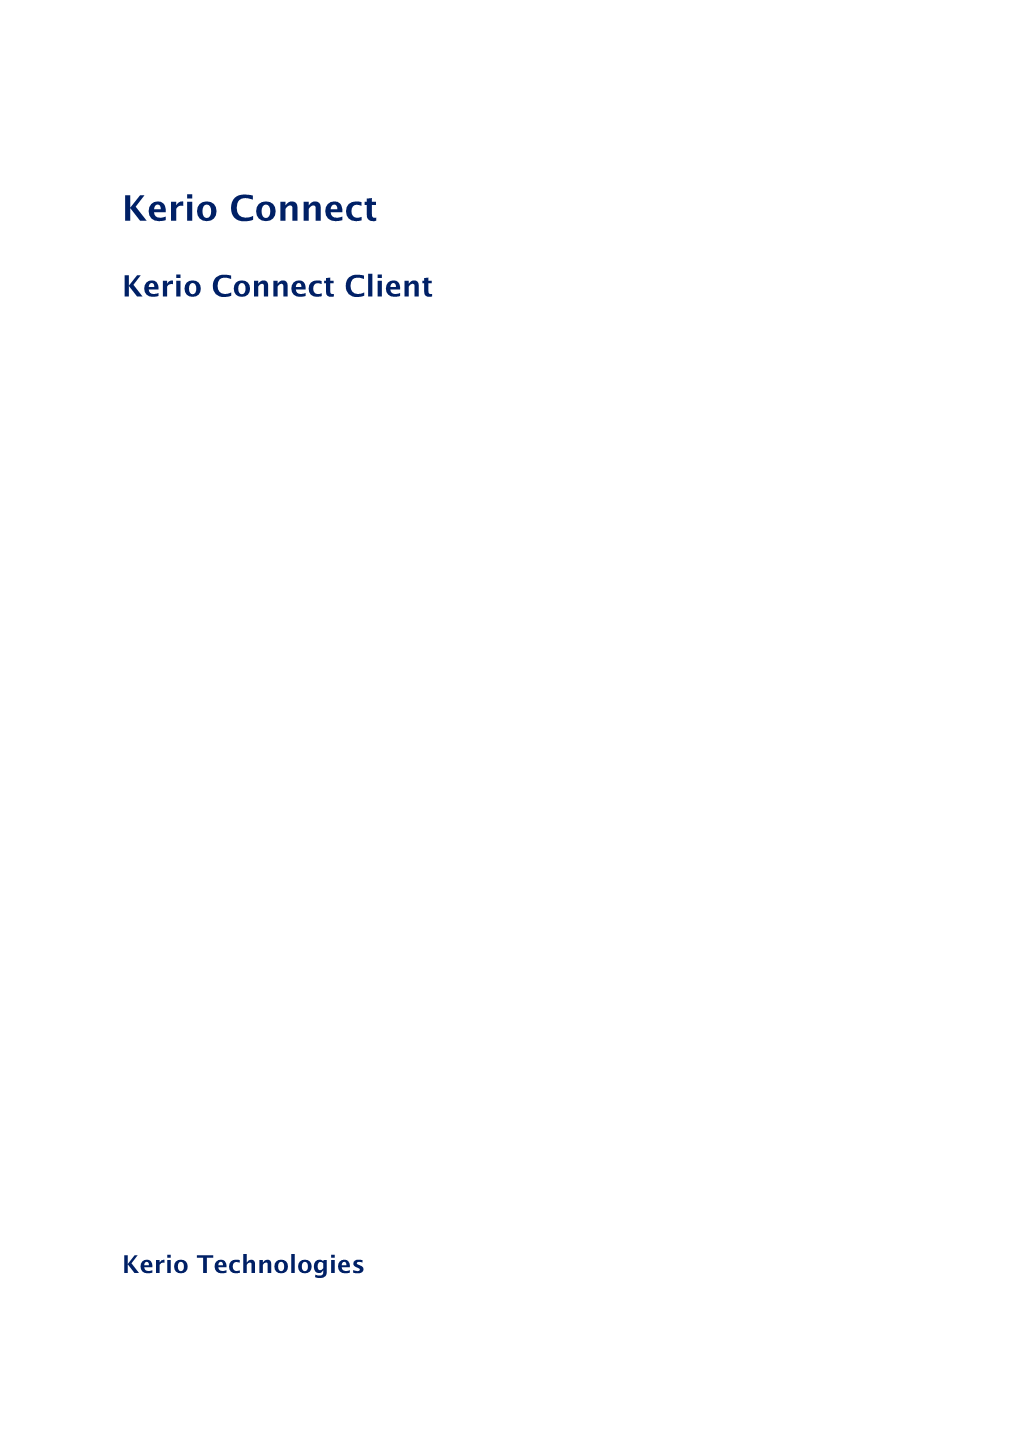 Kerio Connect Client